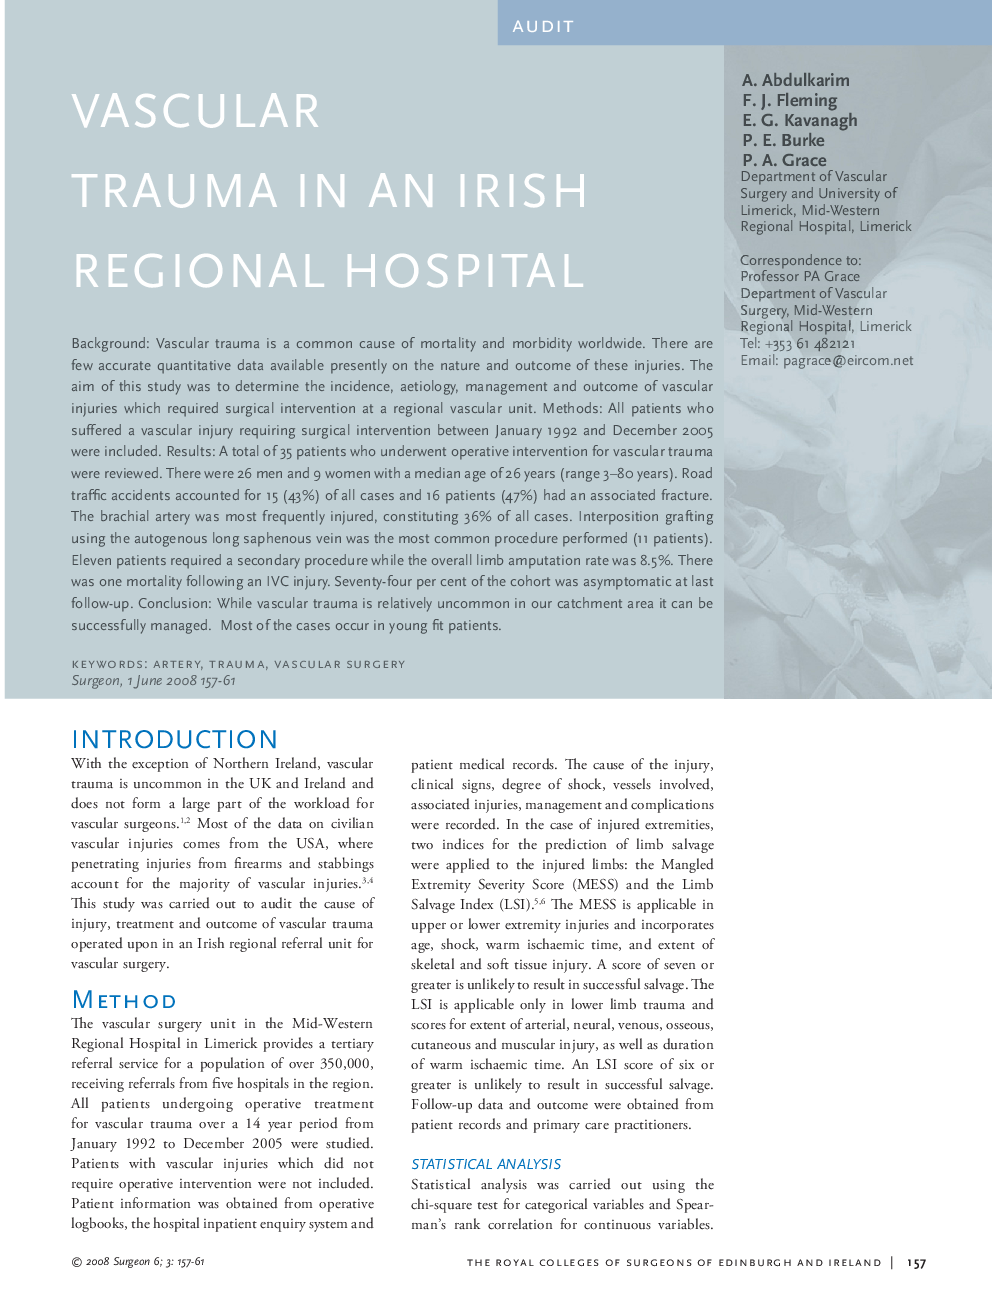 Vascular trauma in an irish regional hospital